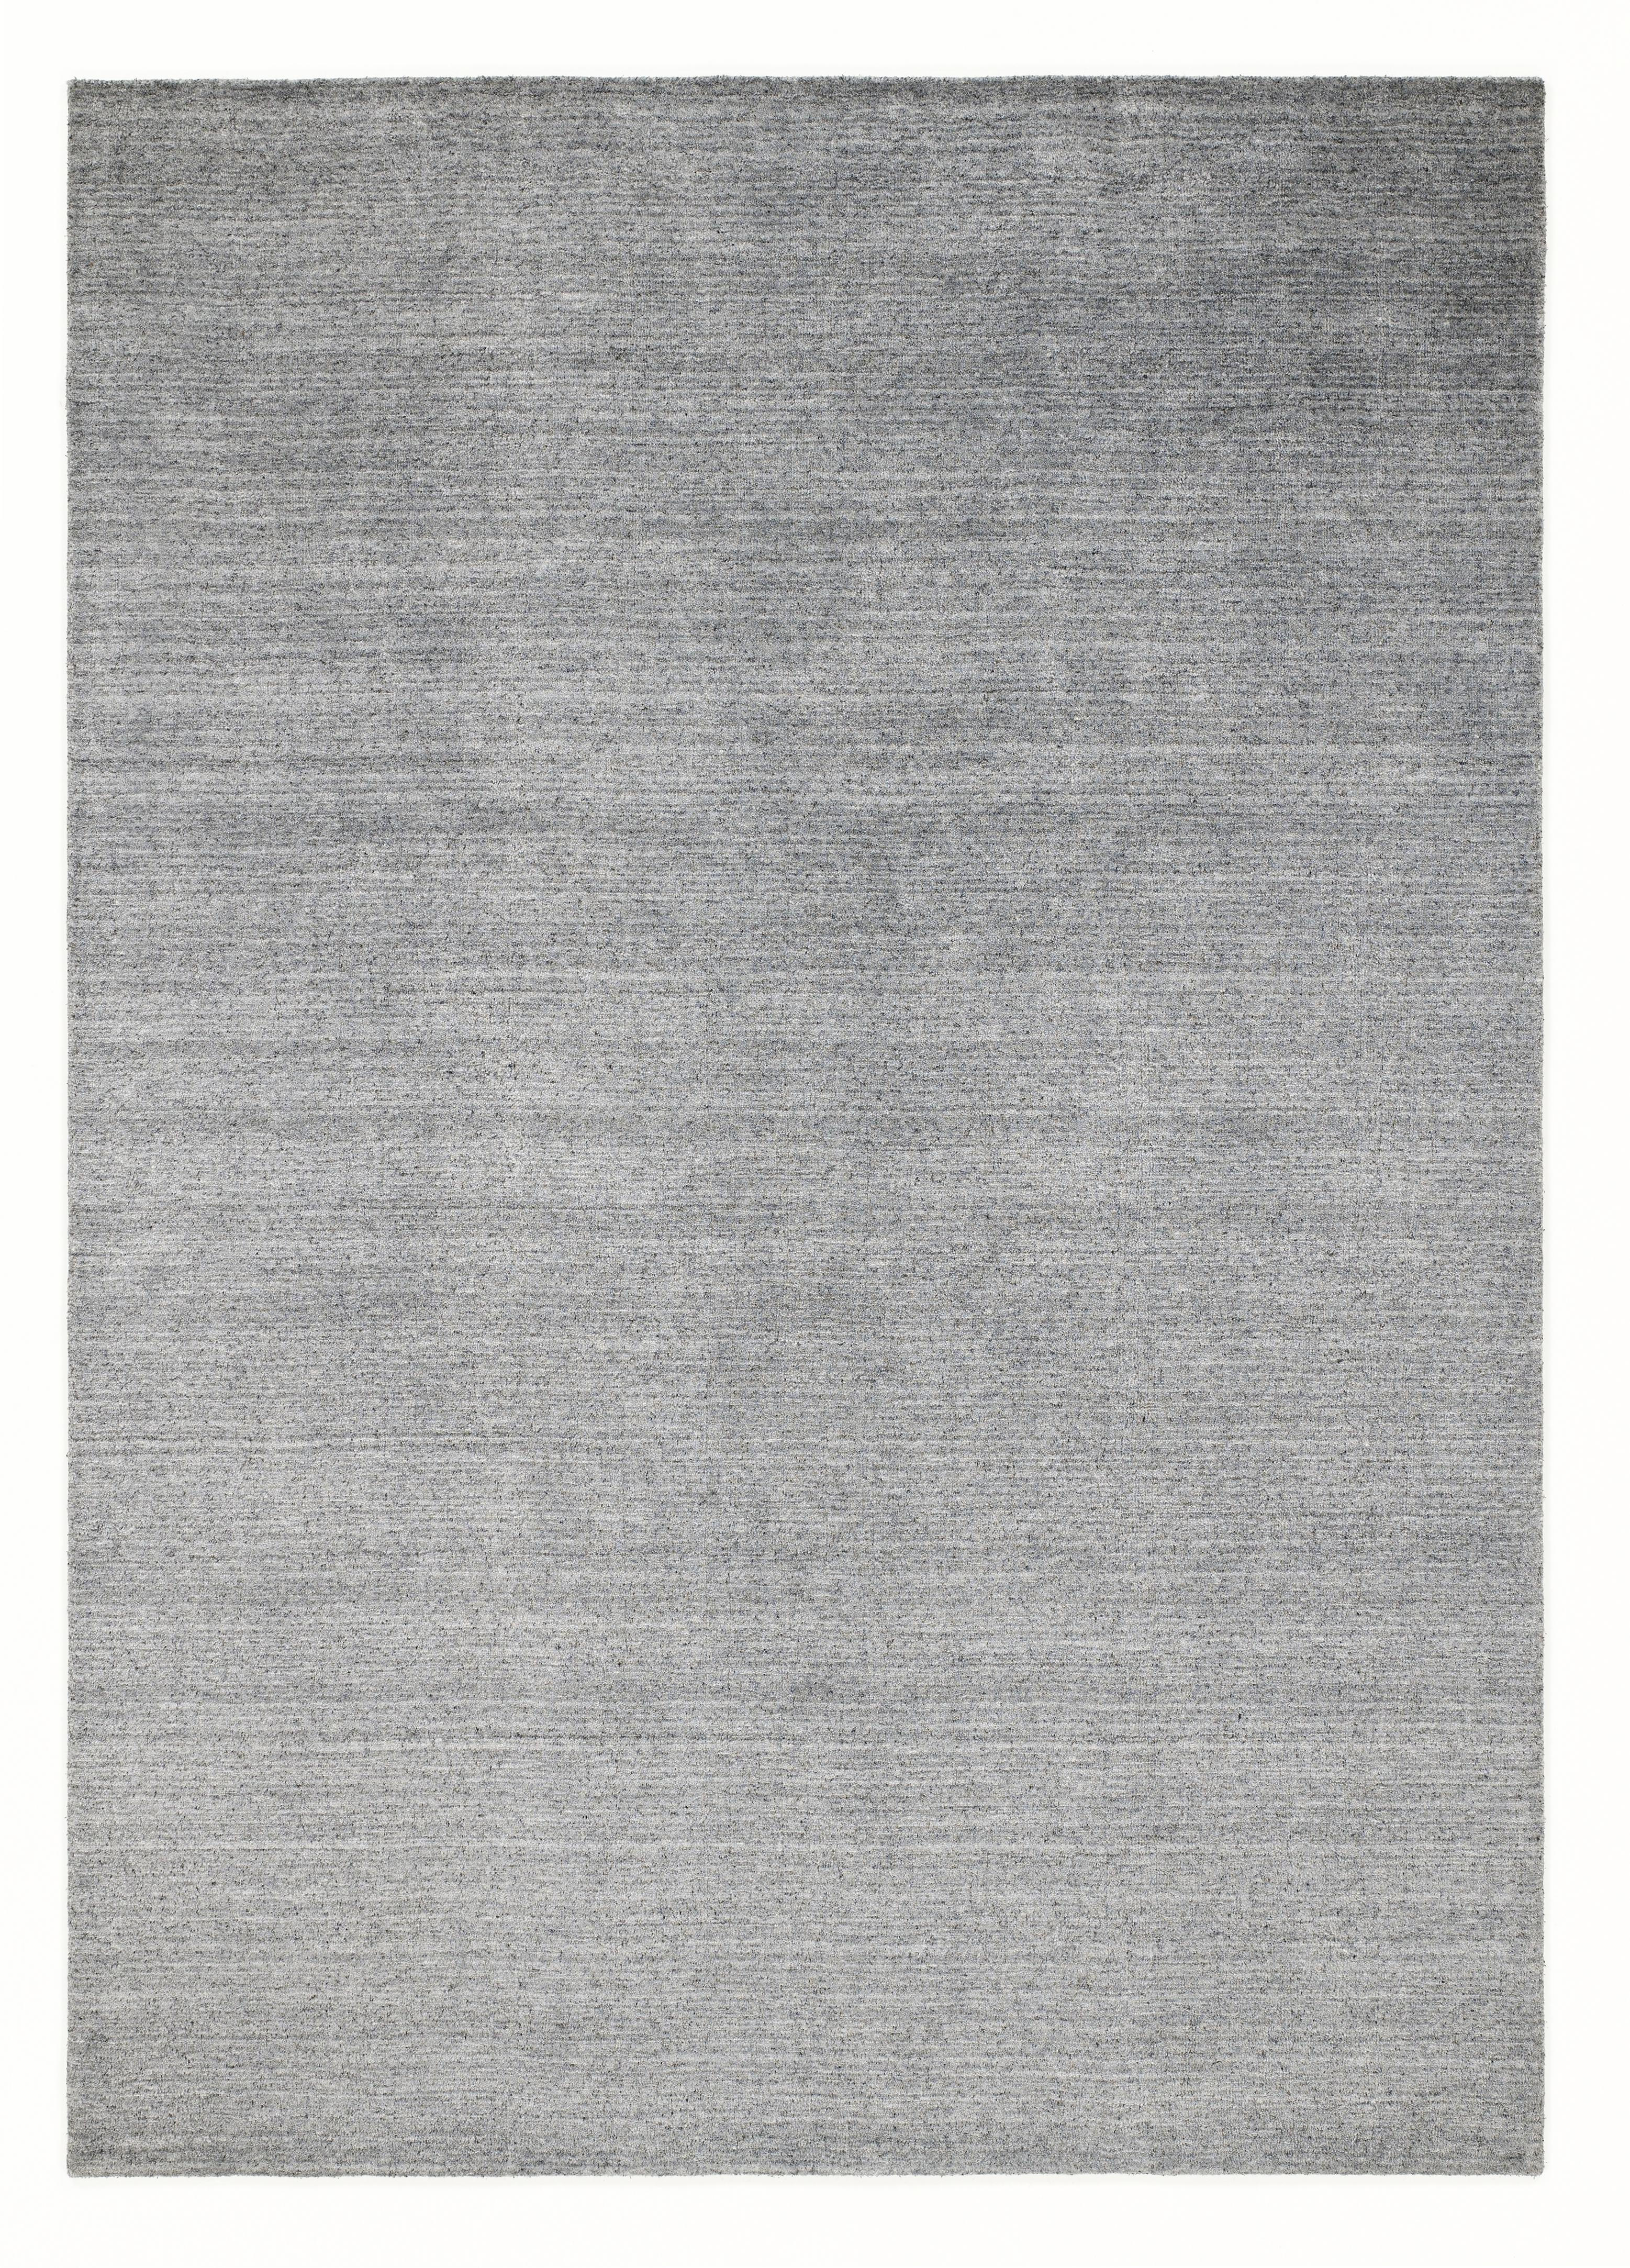 ORIENTTEPPICH  200/300 cm  Silberfarben   - Silberfarben, KONVENTIONELL, Textil (200/300cm) - Musterring